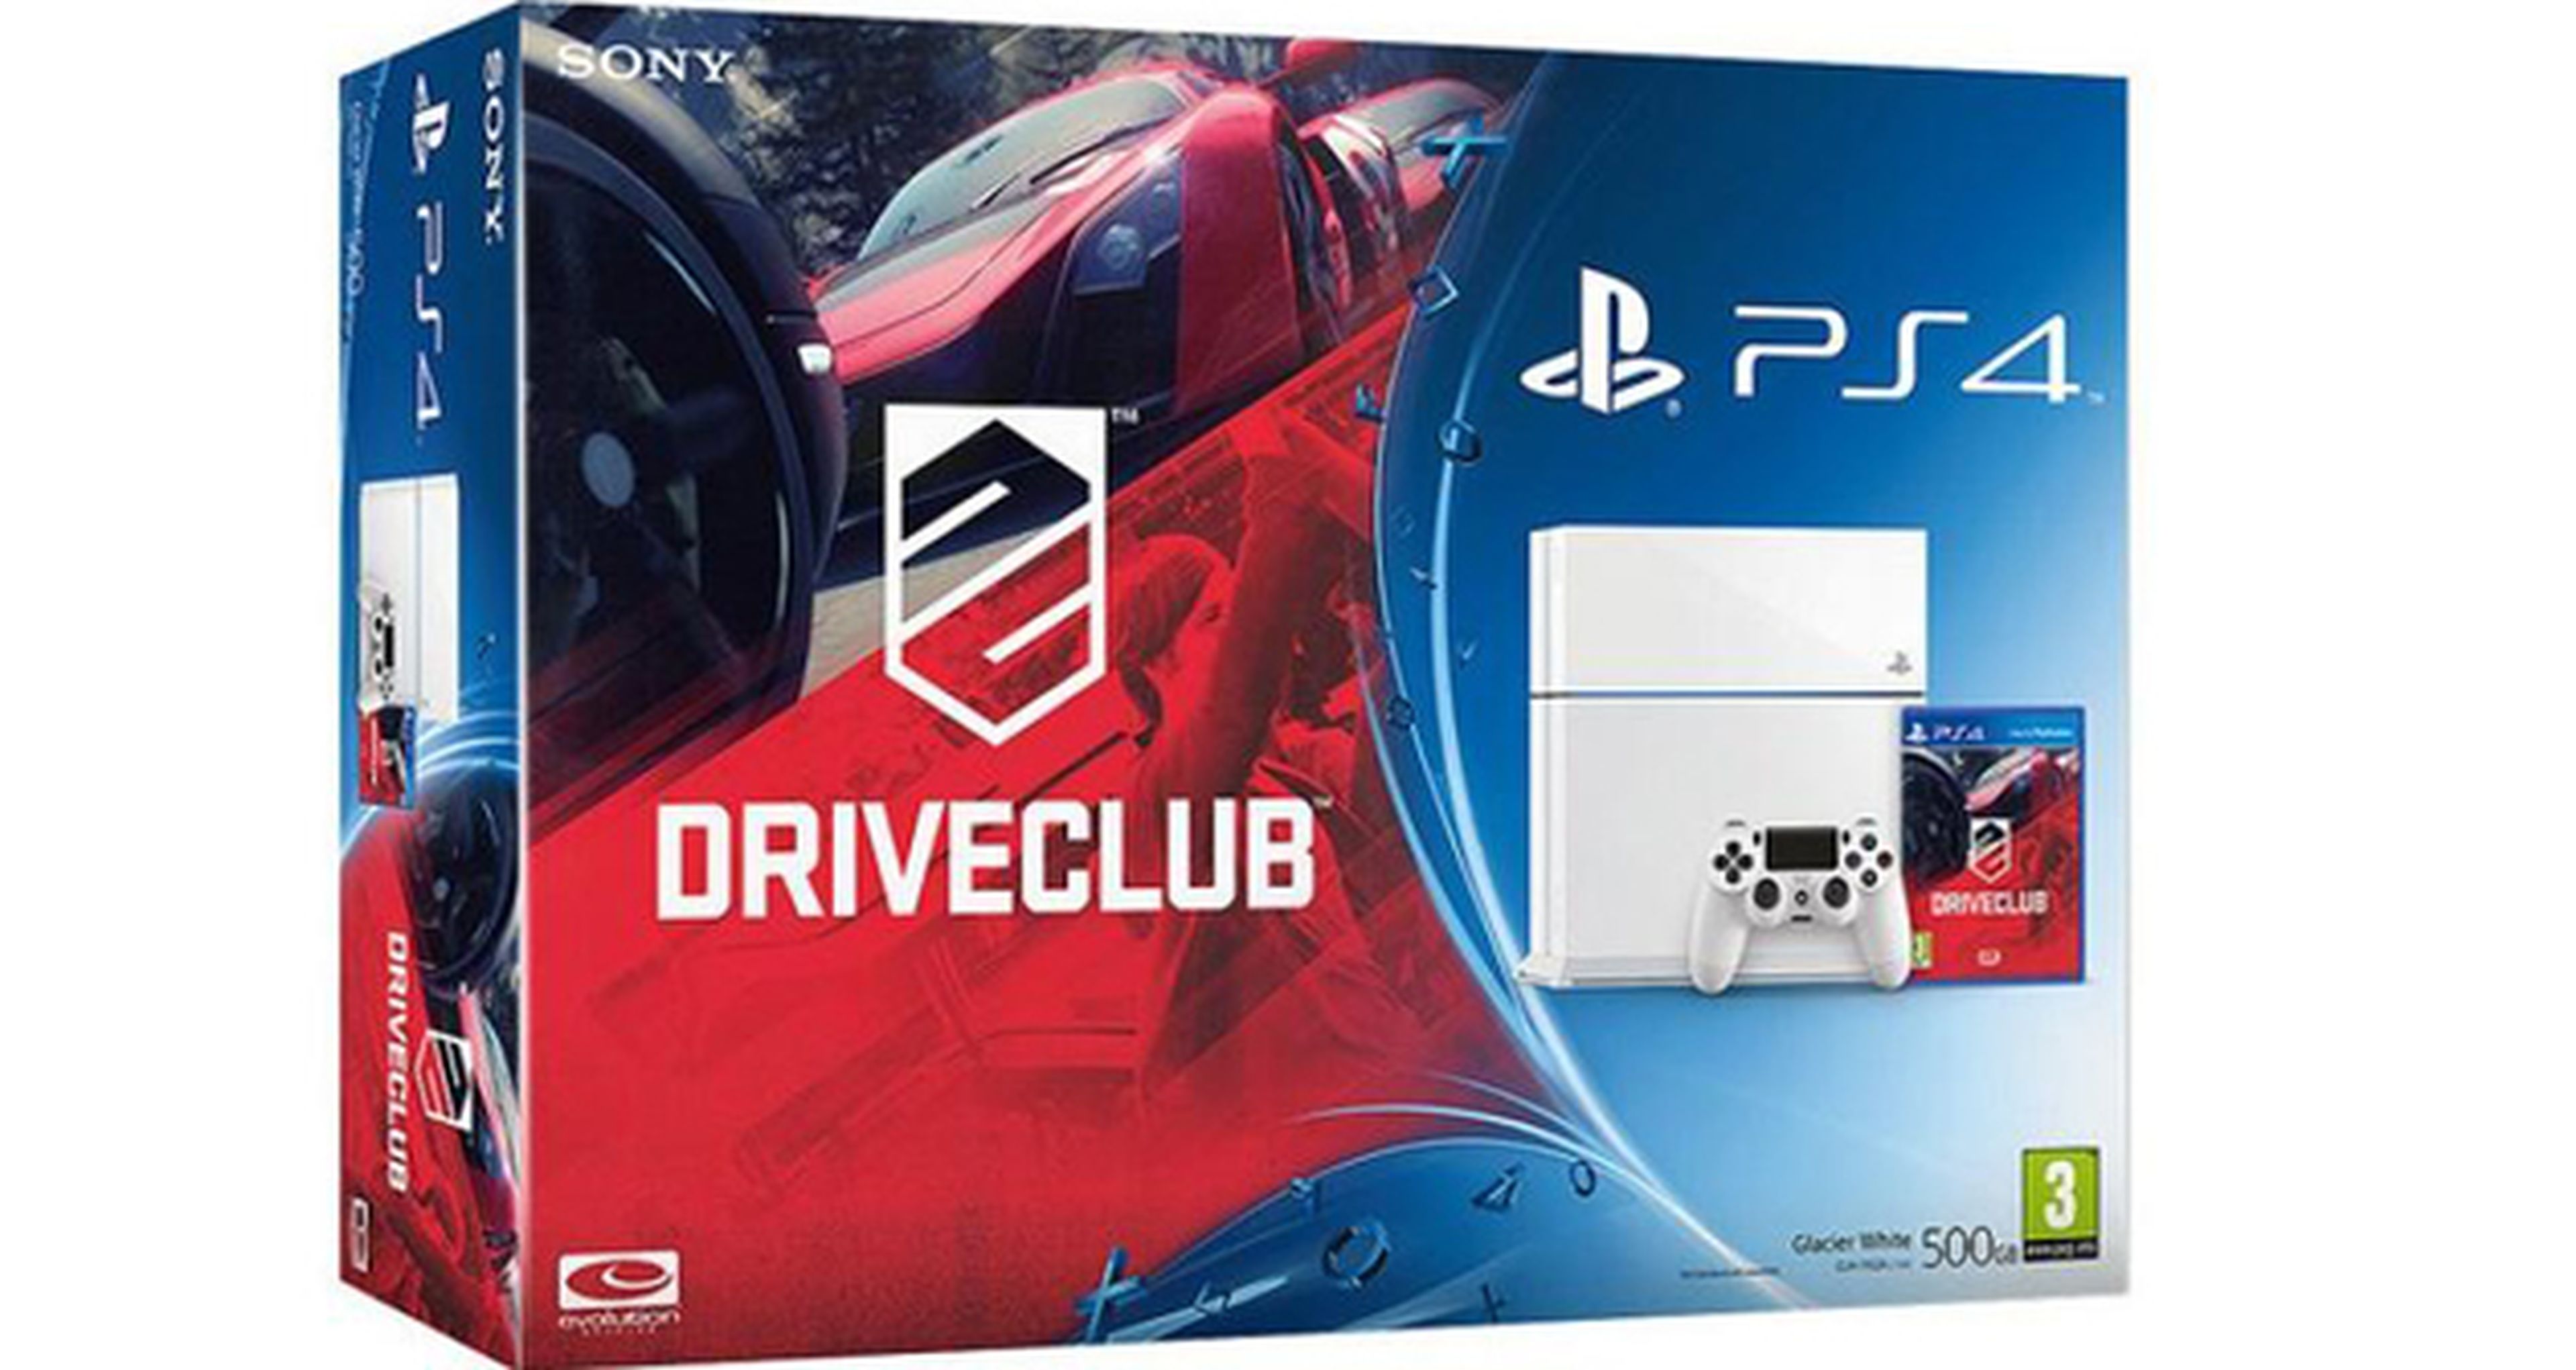 Anunciados dos nuevos packs de PS4 junto a DriveClub